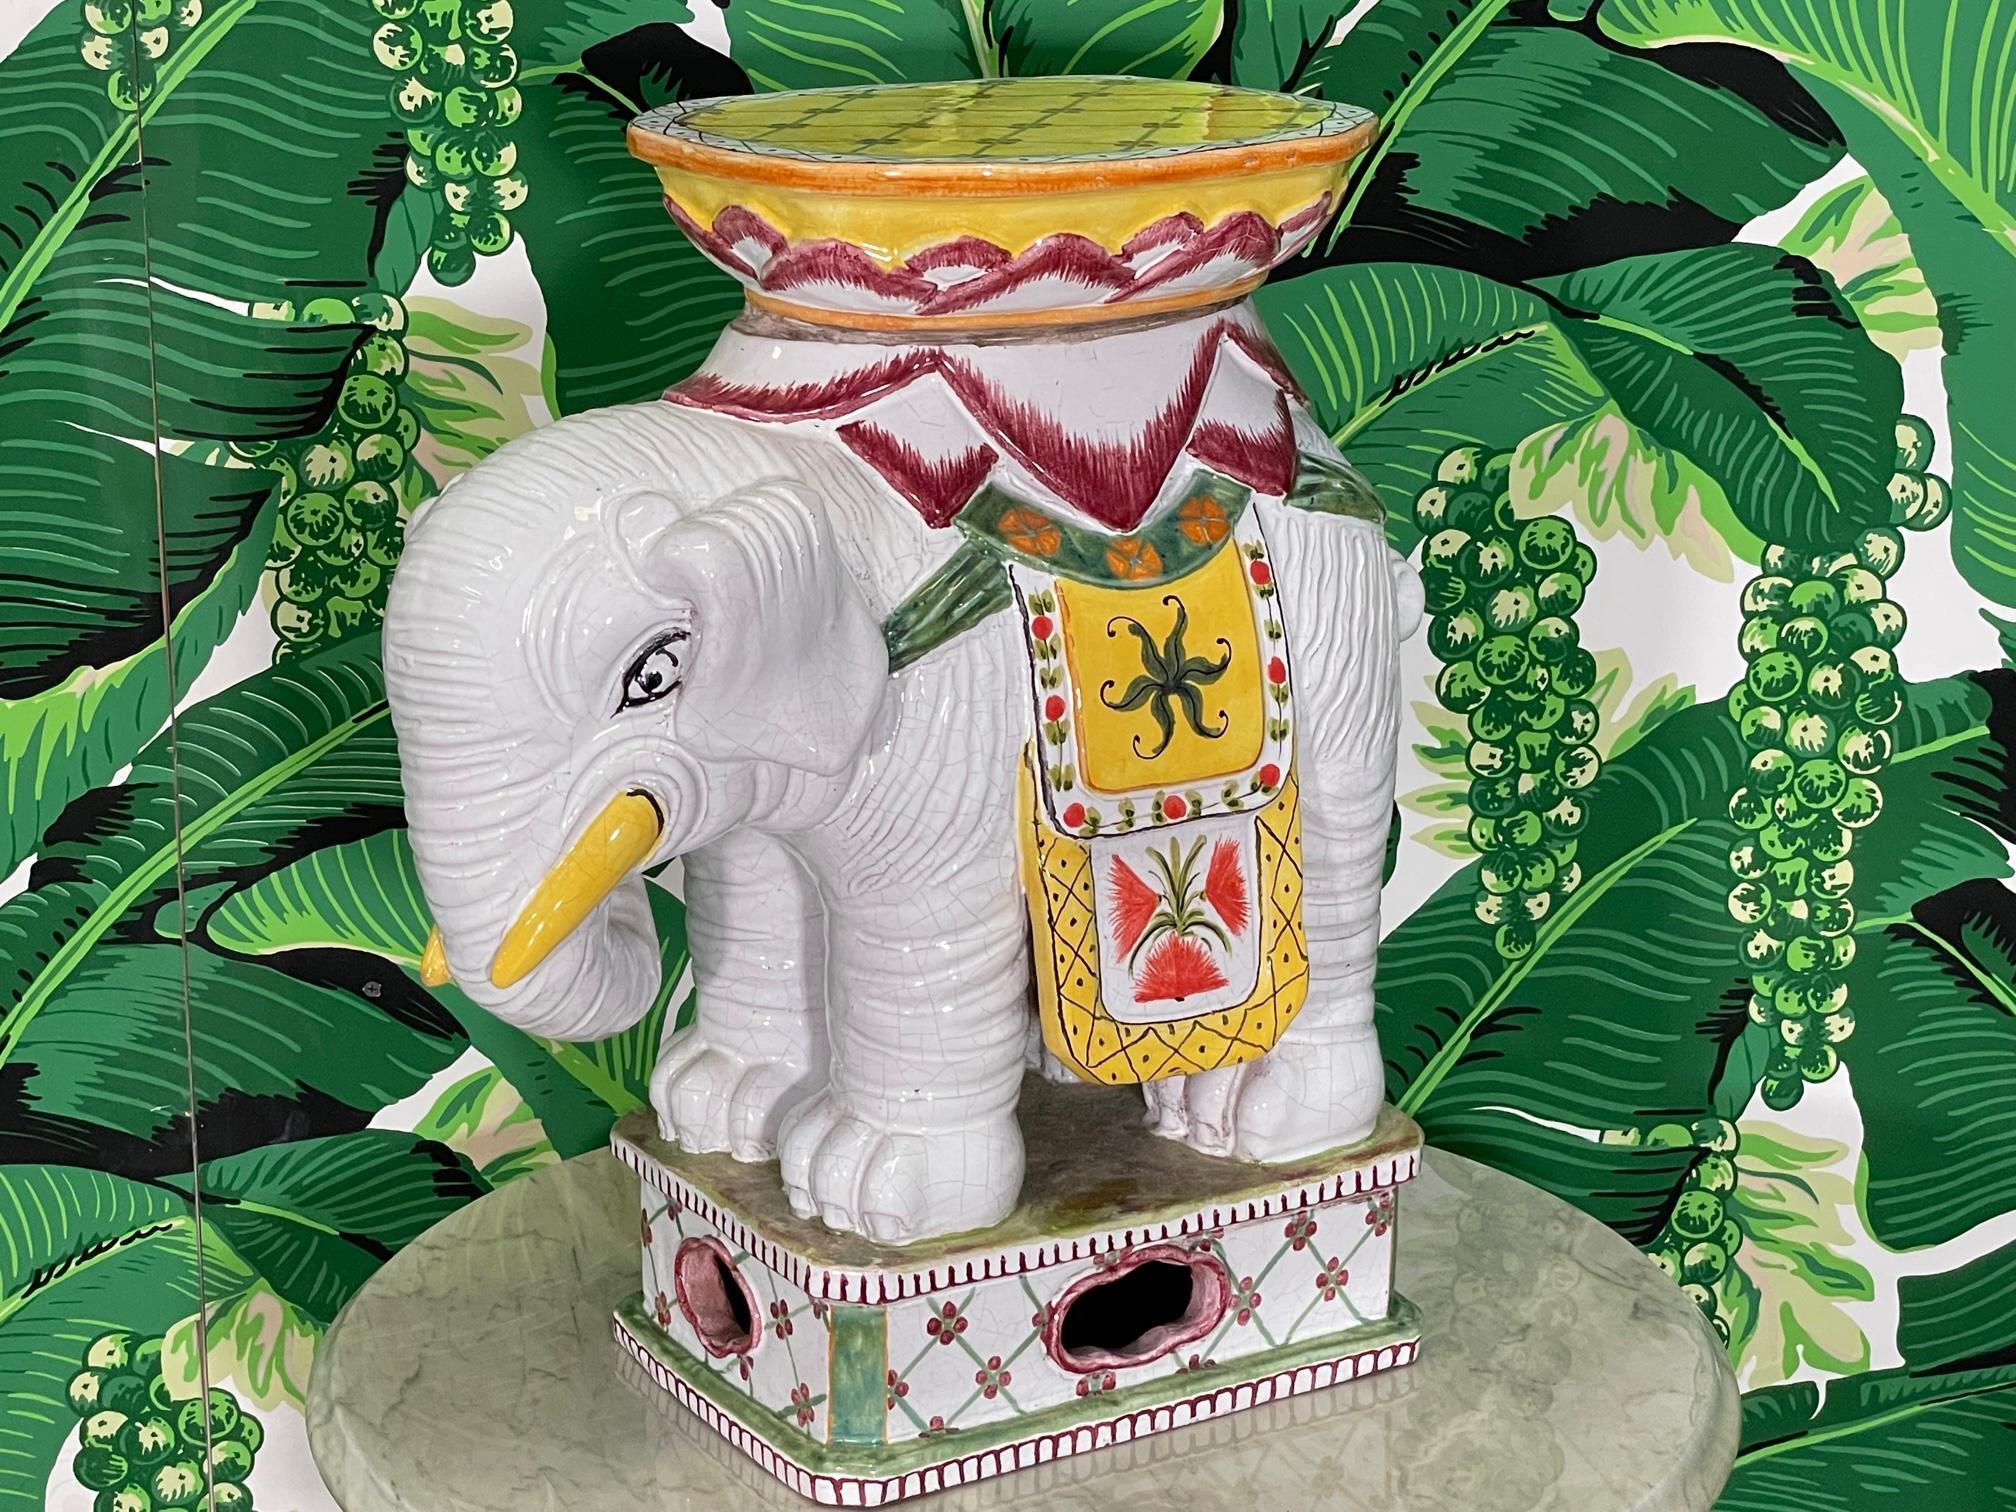 Handbemalter Elefanten-Gartensitz aus Keramik, der auch als Beistelltisch oder Fußhocker verwendet werden kann, in glänzendem Weiß mit leuchtenden Akzentfarben gehalten. Guter Zustand mit kleinen altersbedingten Mängeln, siehe Fotos für